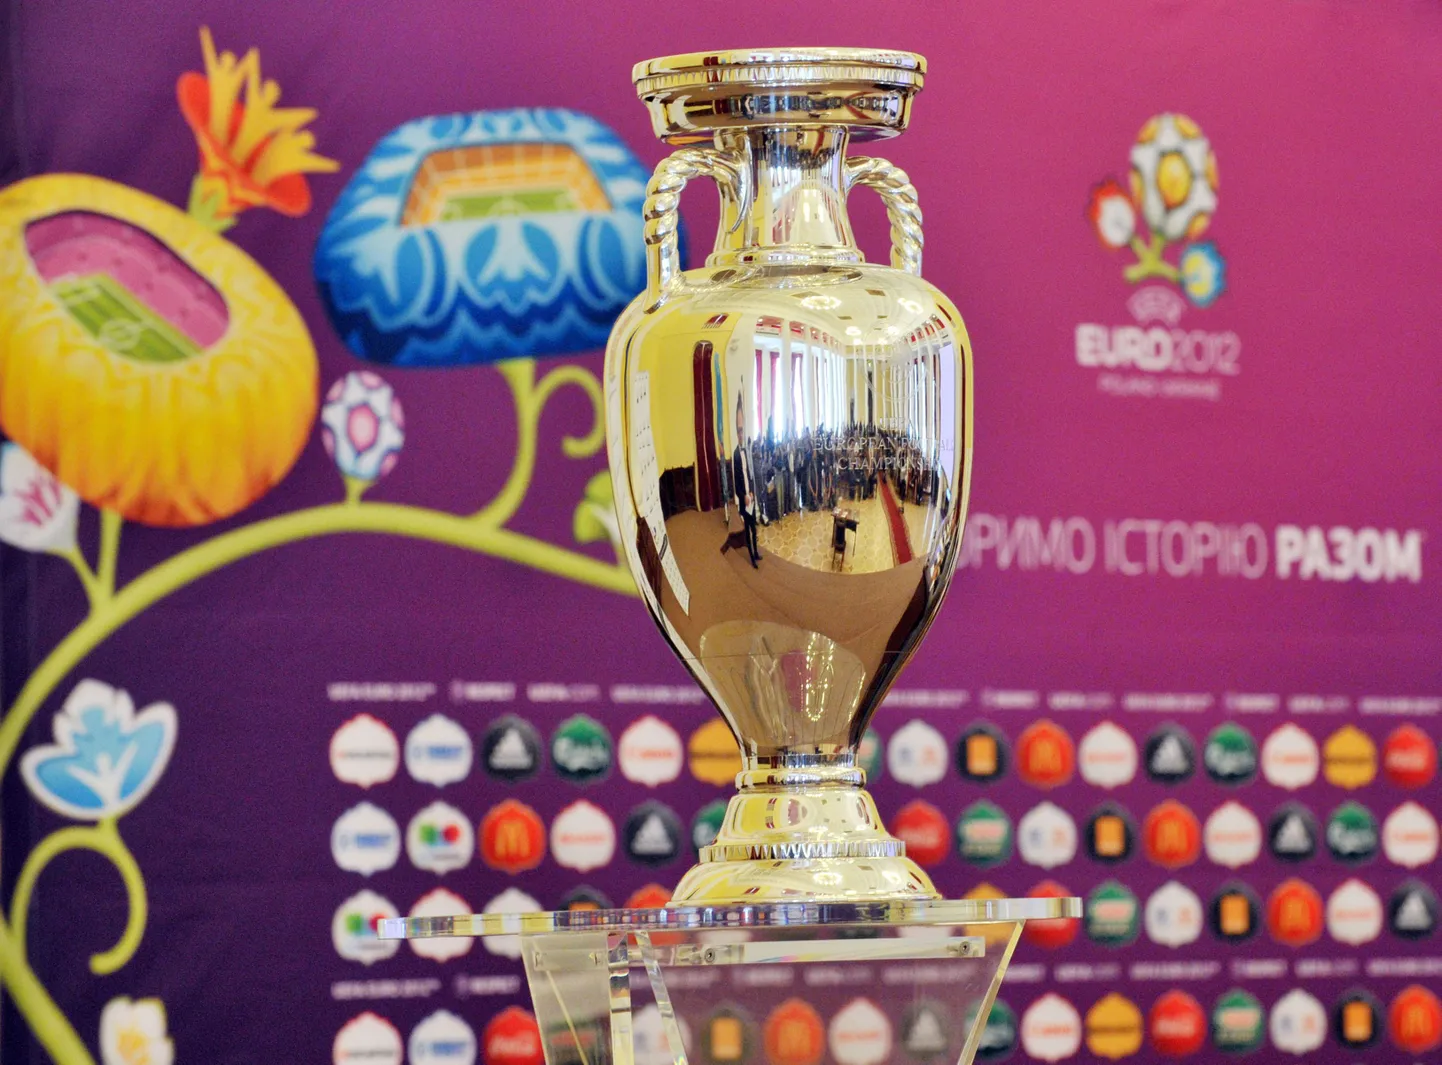 Кубок, вручаемый победителю чемпионата Европы по футболу.